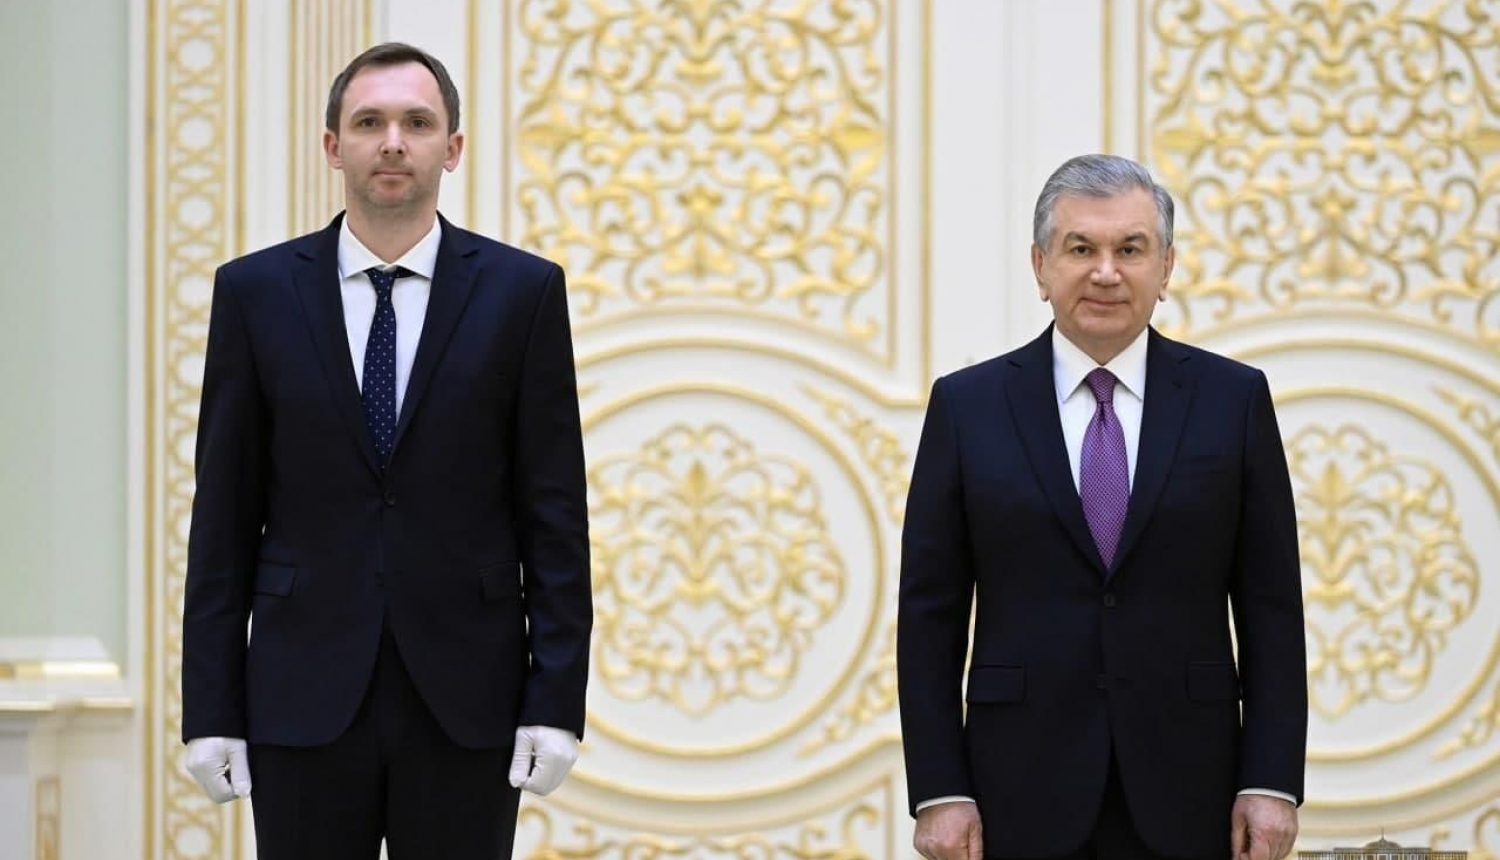 Vēstnieks Reinis Trokša iesniedz akreditācijas vēstules Uzbekistānas Republikas prezidentam